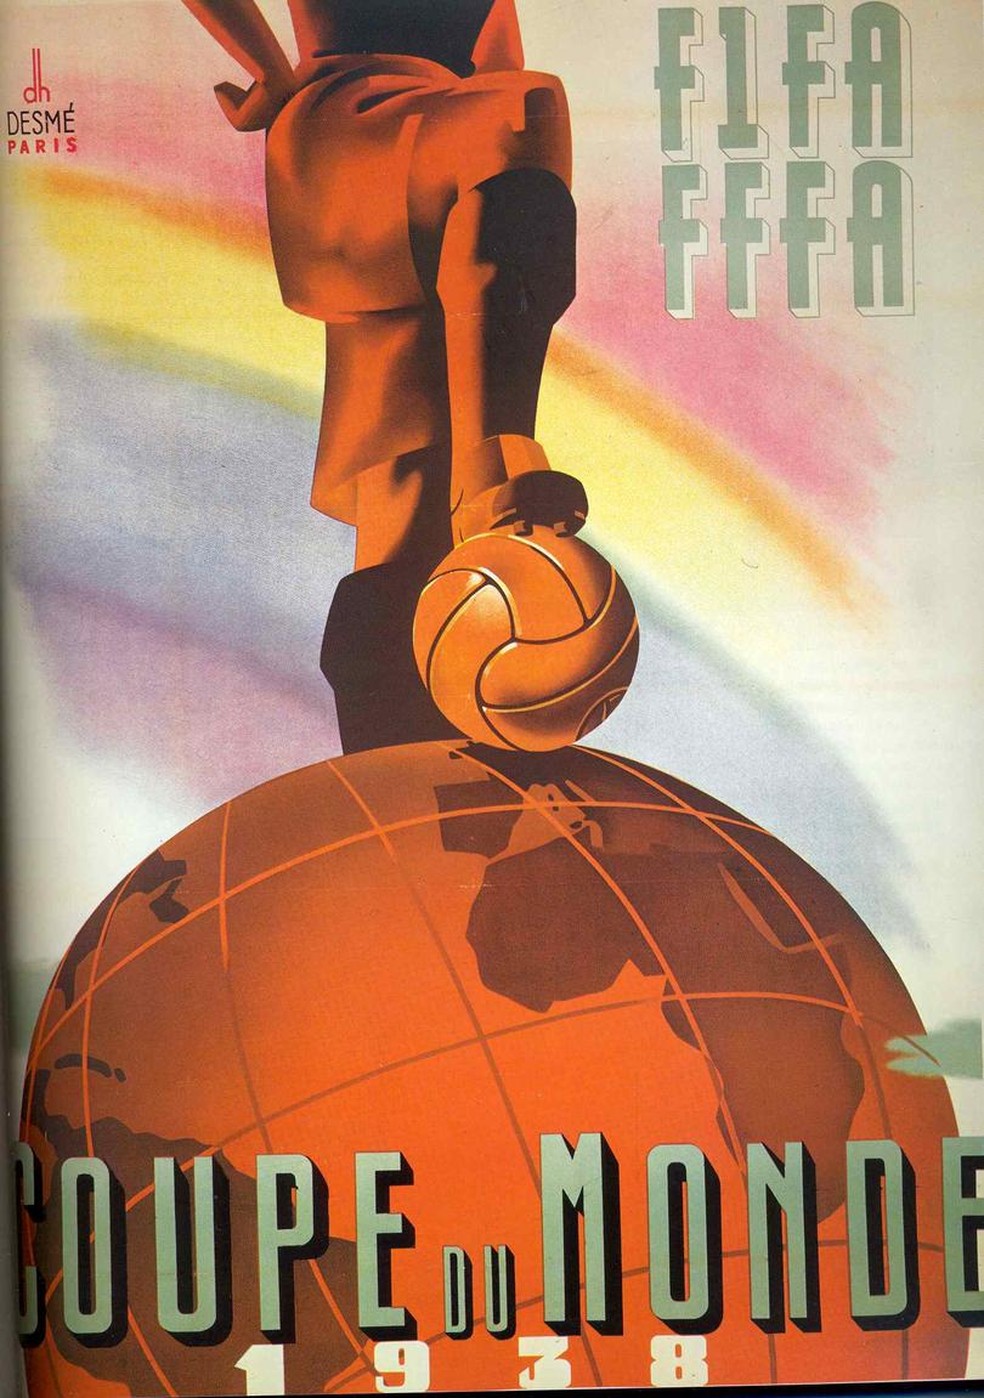 Portugal - Poster 18x 24 Calendário-Placar da Copa do Mundo 2018